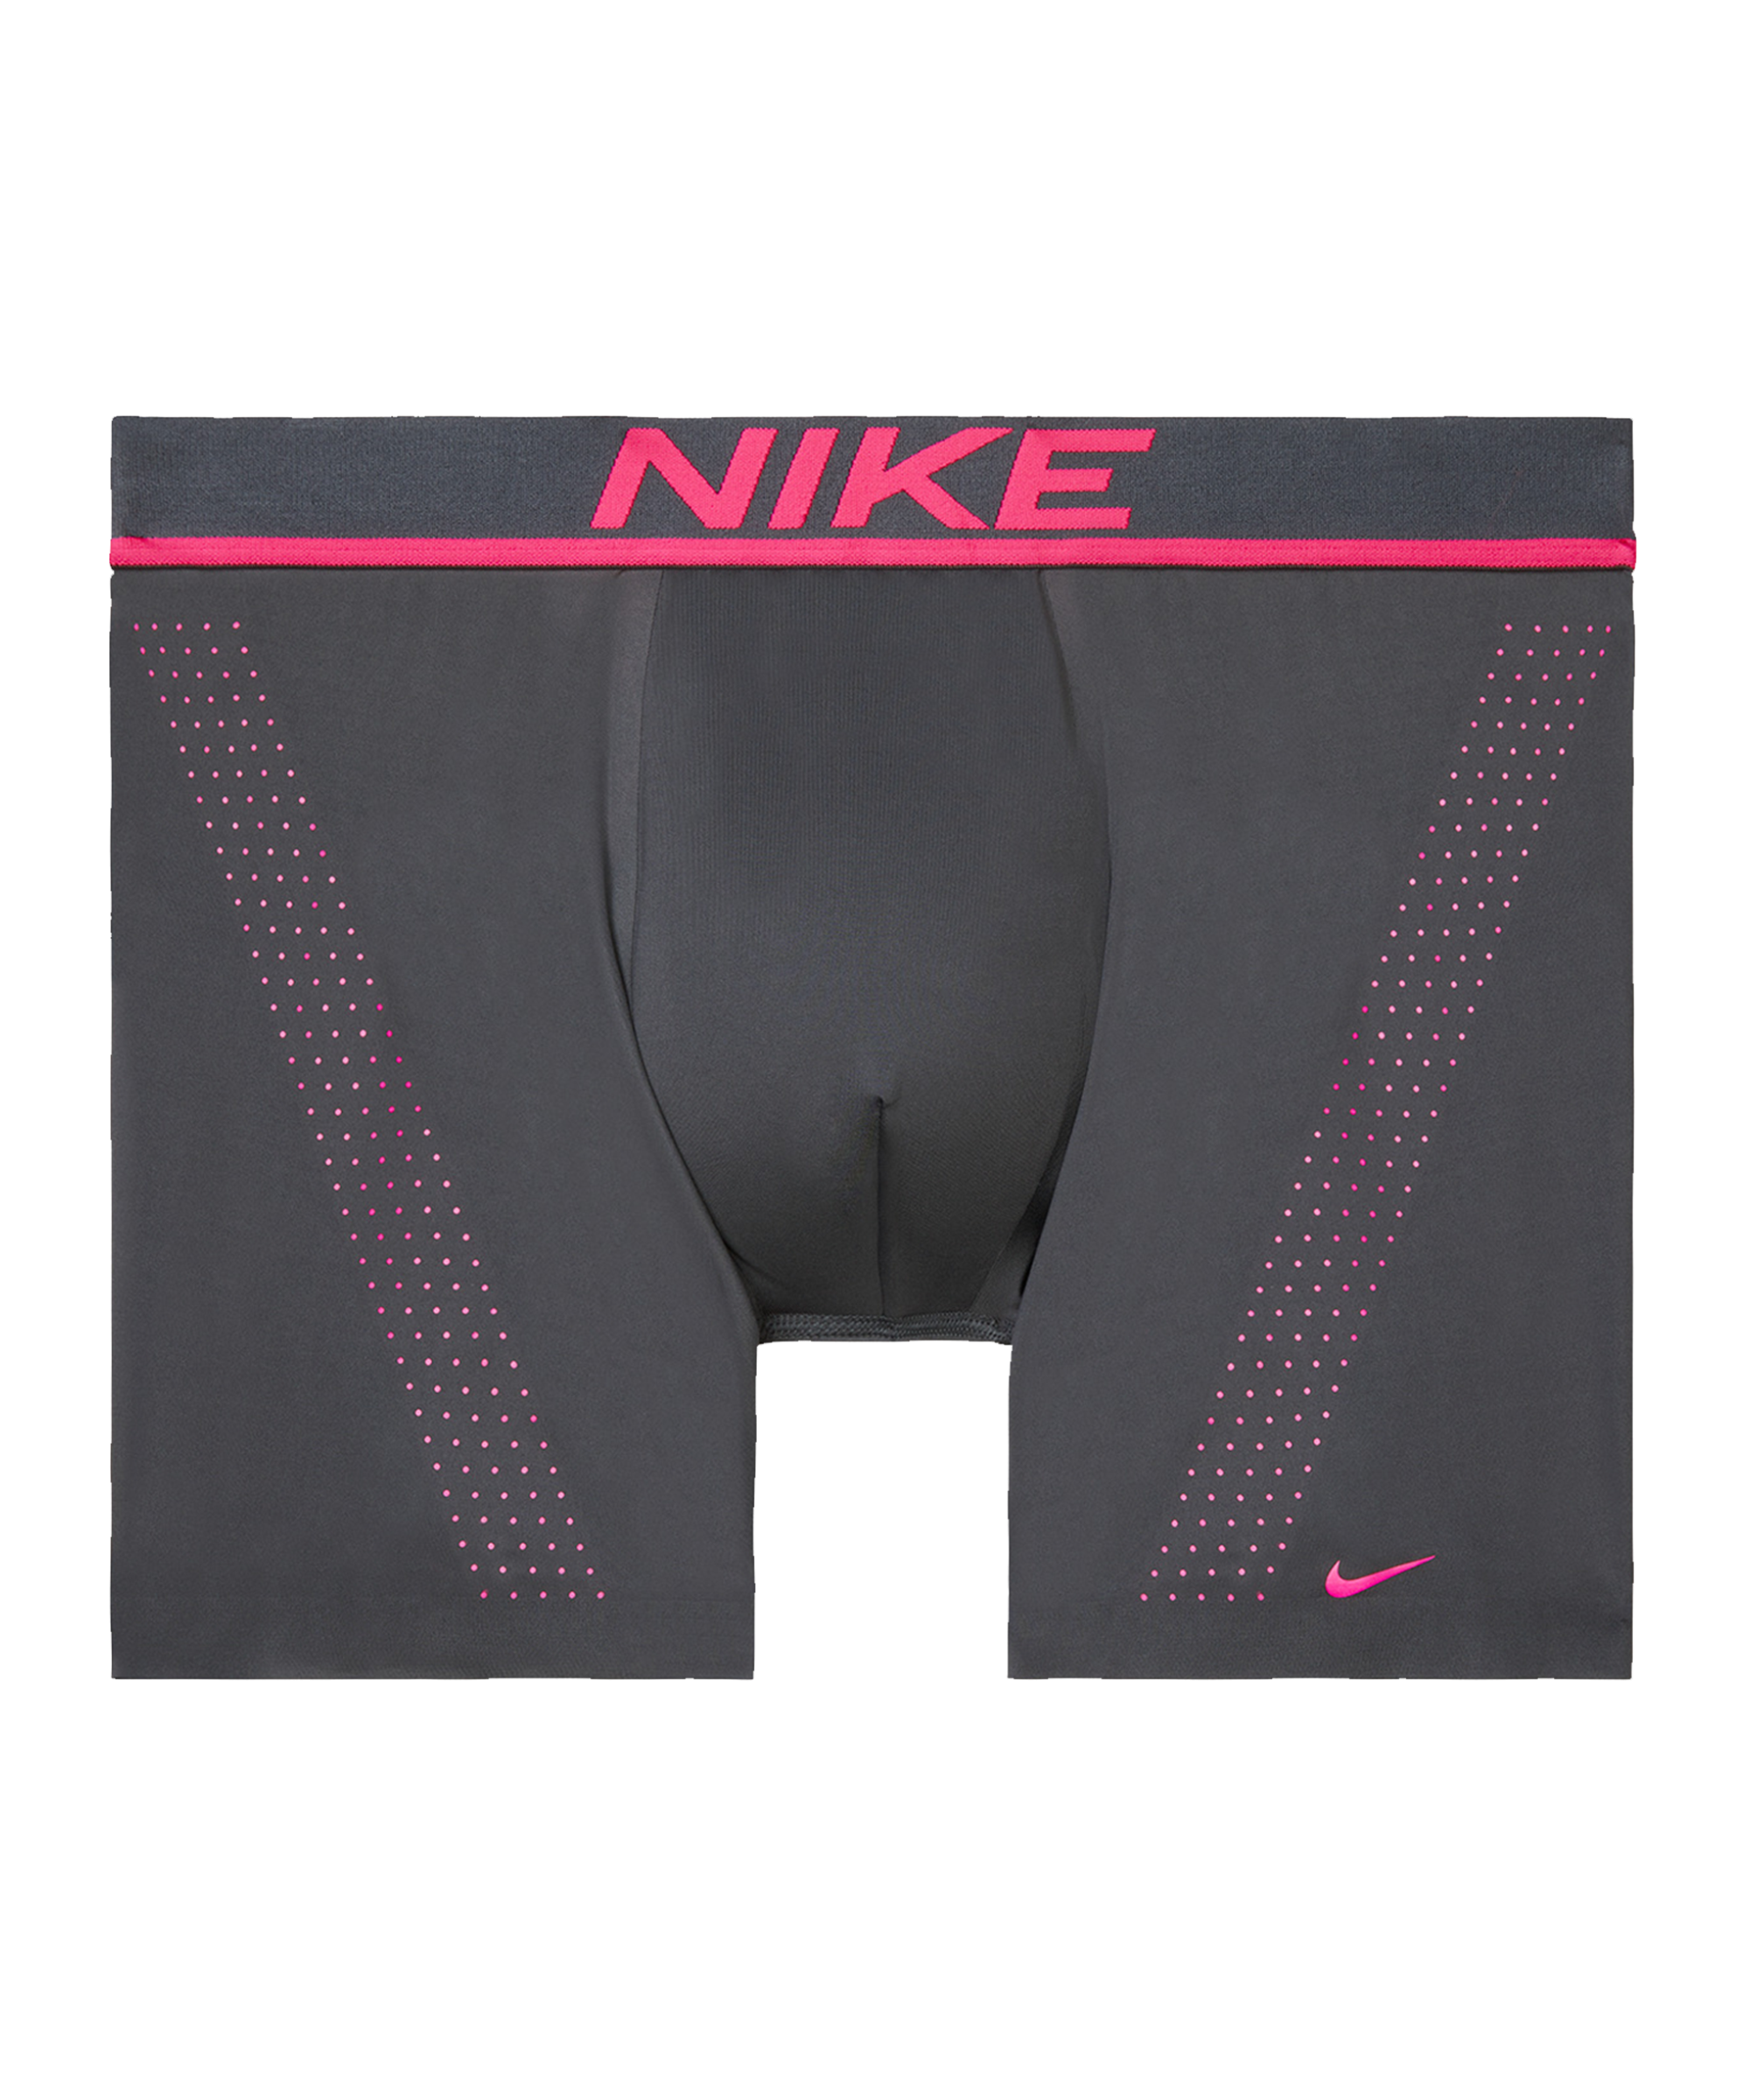 Bokserit Nike Trunk